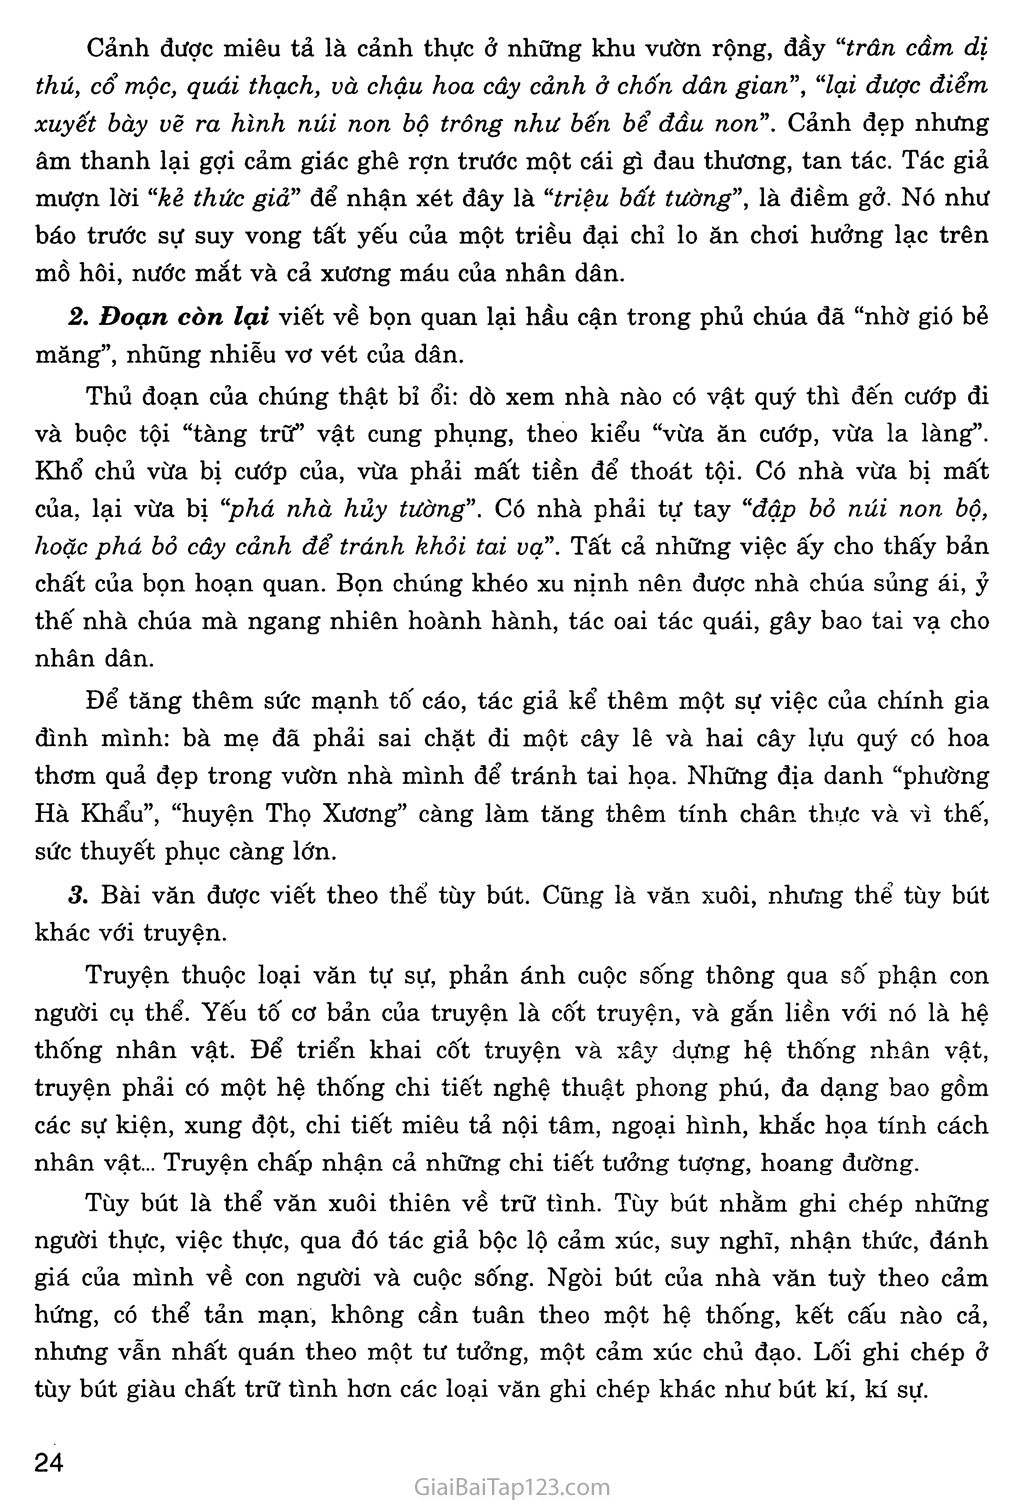 Chuyện cũ trong phủ chúa Trịnh (trích Vũ trung tùy bút) trang 3